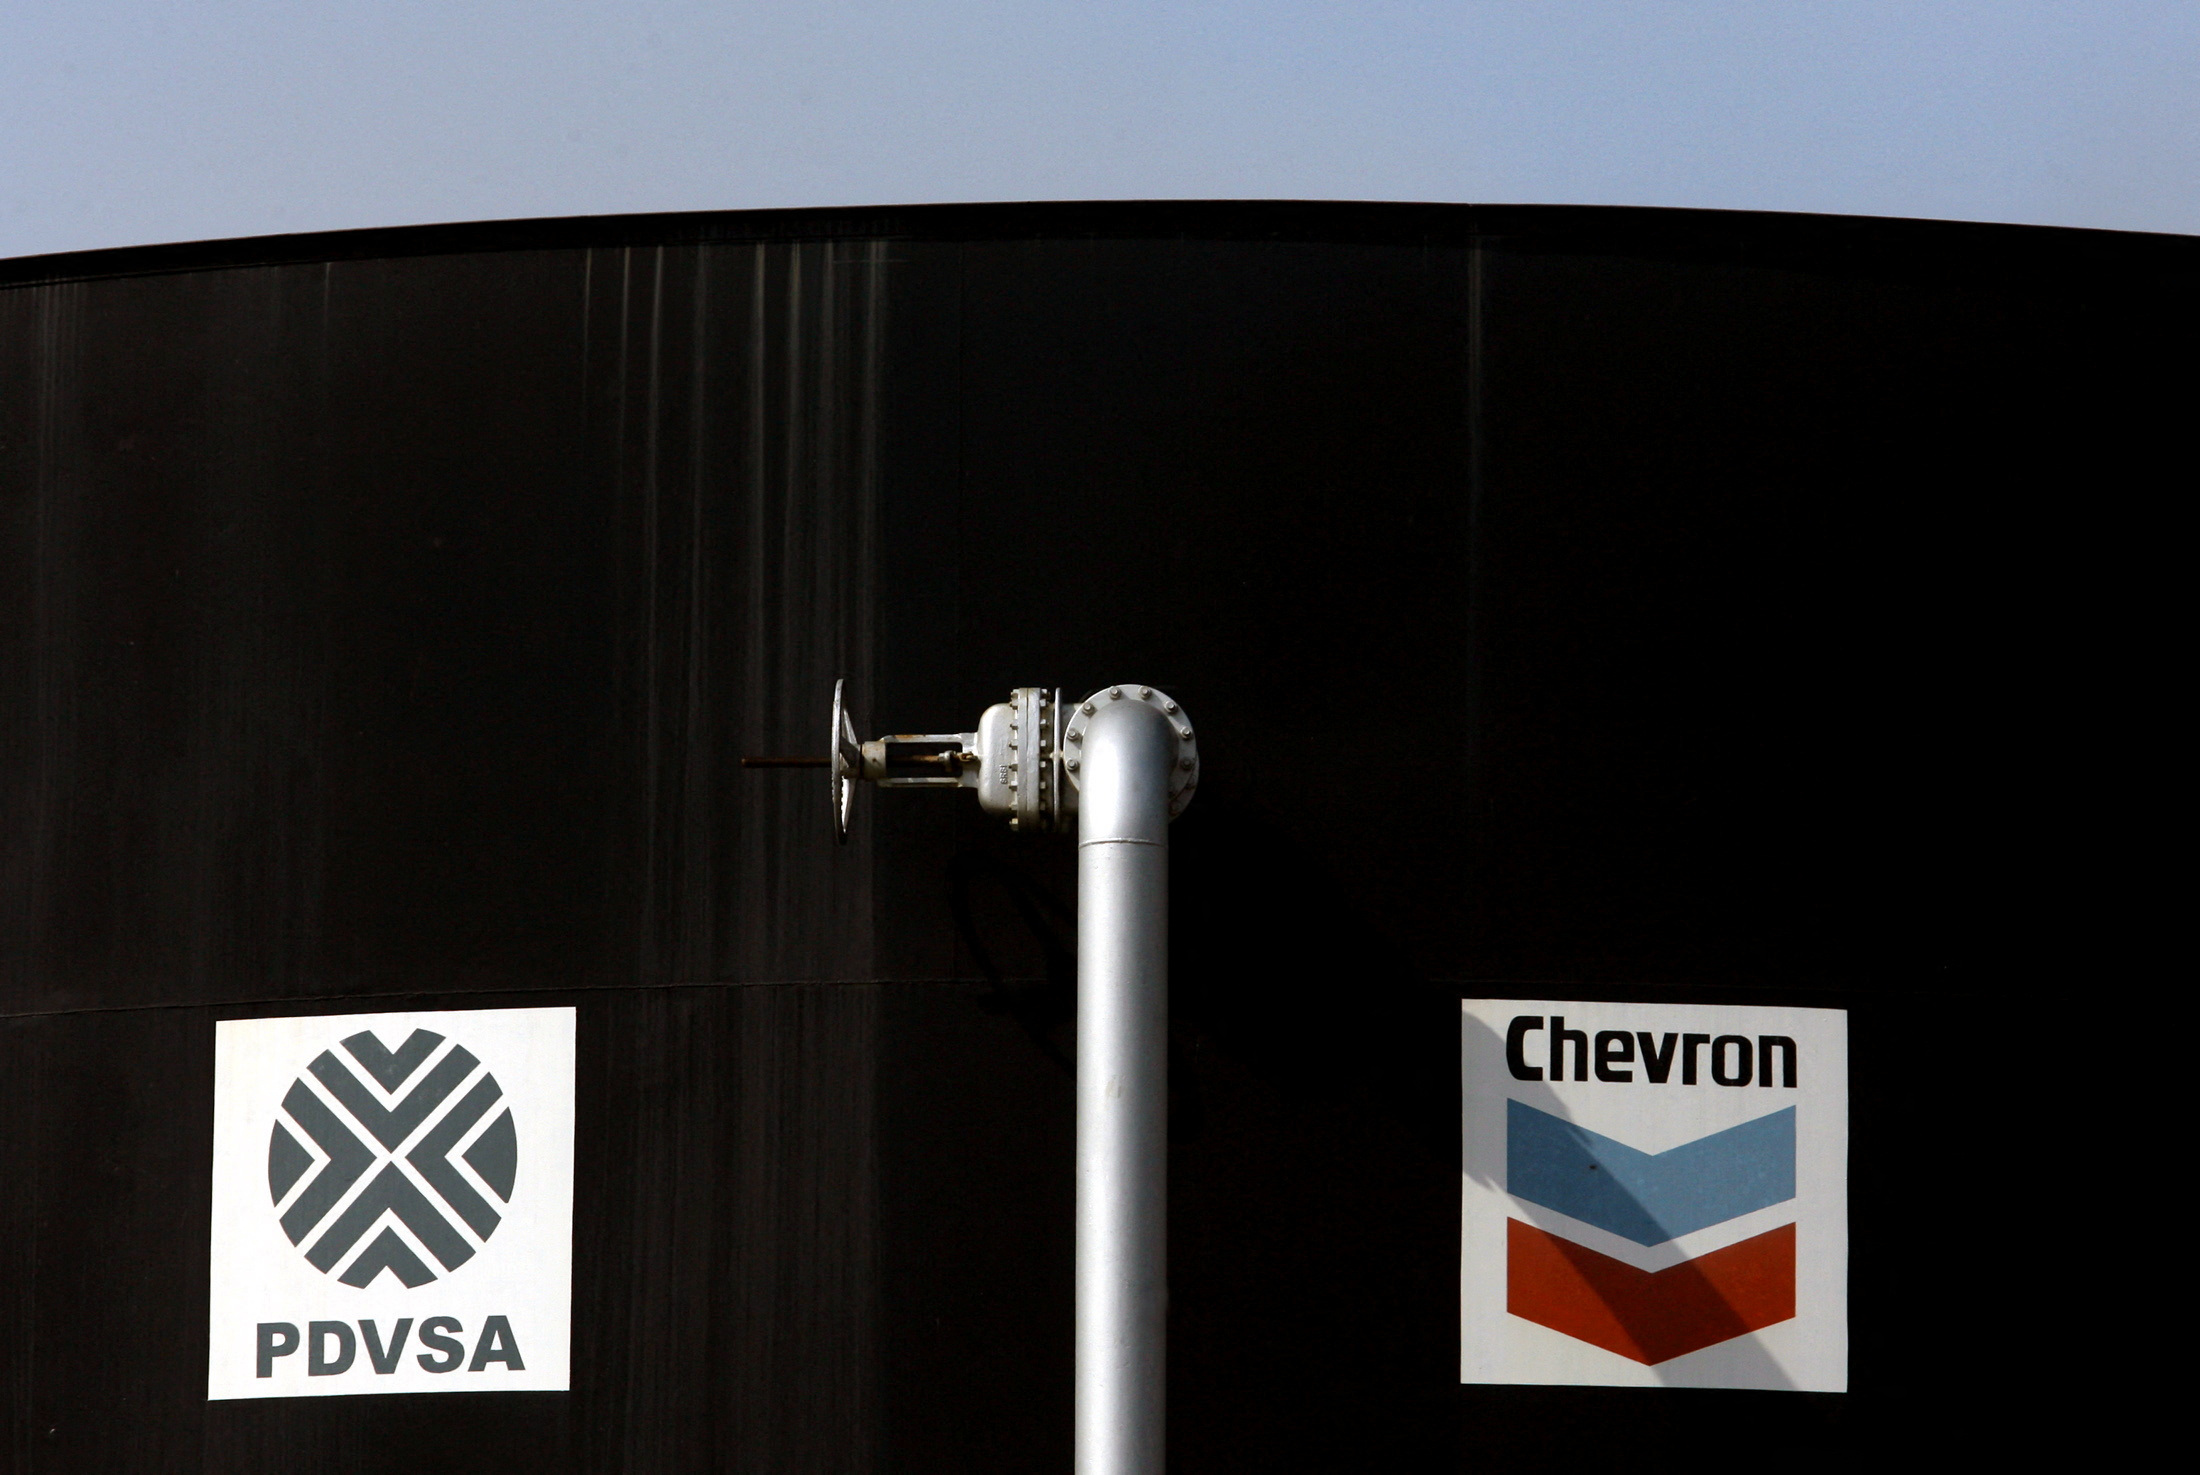 Chevrón reanudará parcialmente sus operaciones en Venezuela siempre y cuando “Pdvsa no reciba ningún ingreso de las ventas de petróleo" (REUTERS)